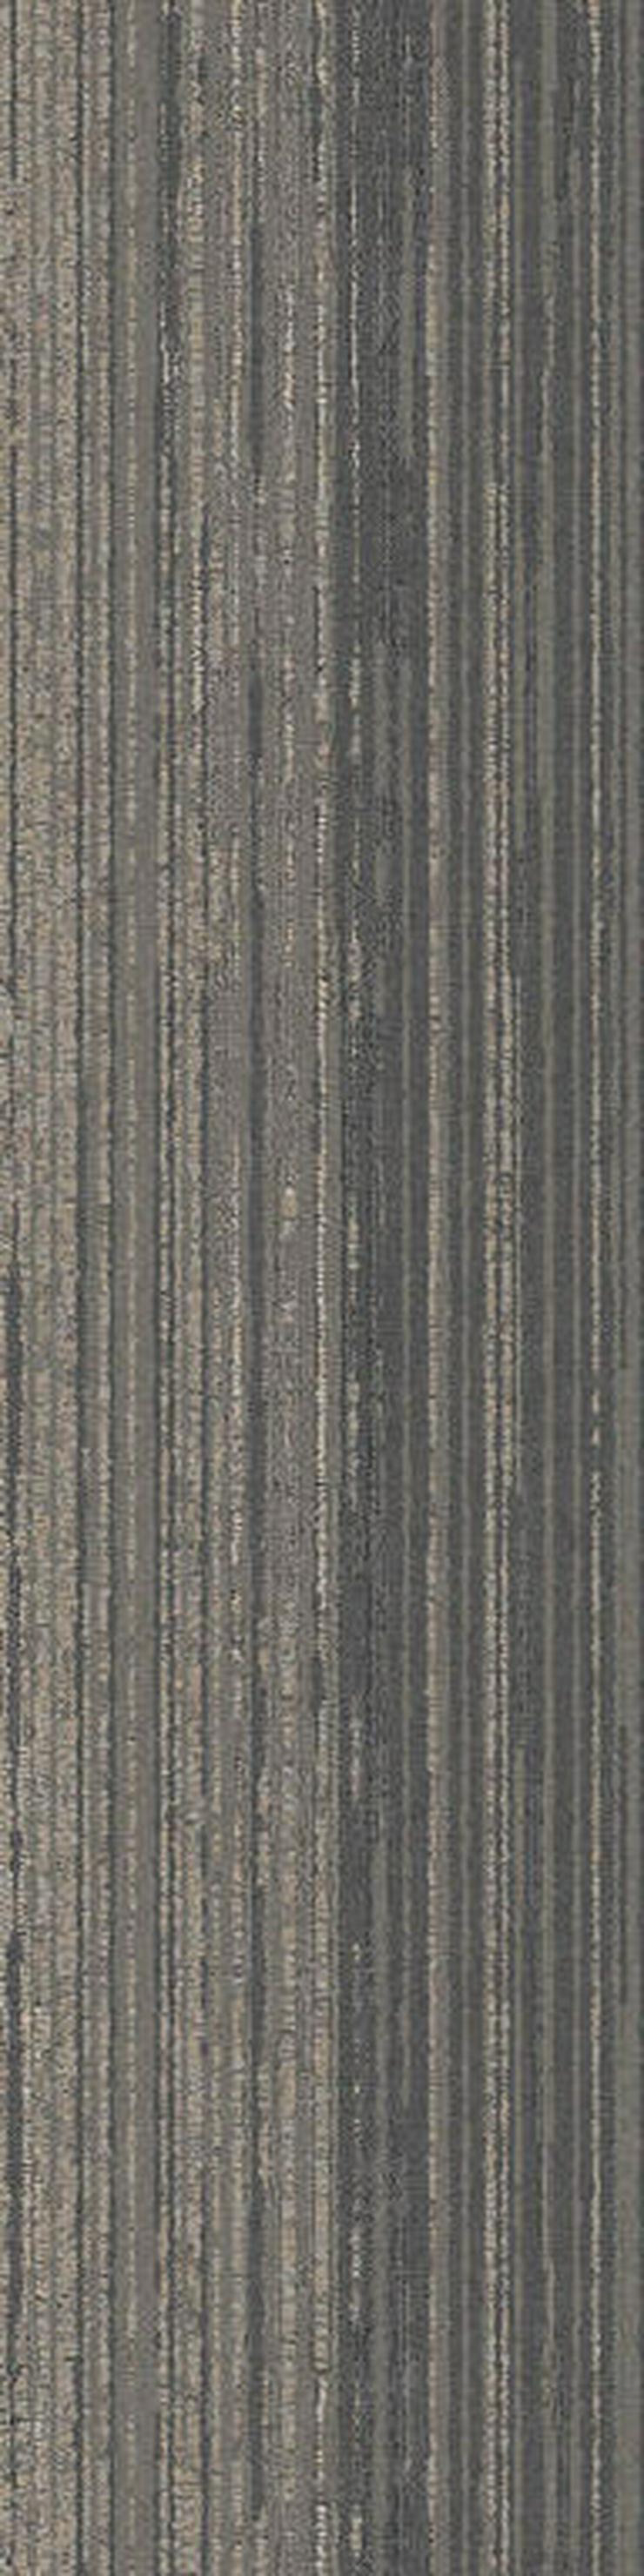 Dekorative 25cm x 100cm Teppichfliesen von Interface - Teppiche - Bild 2